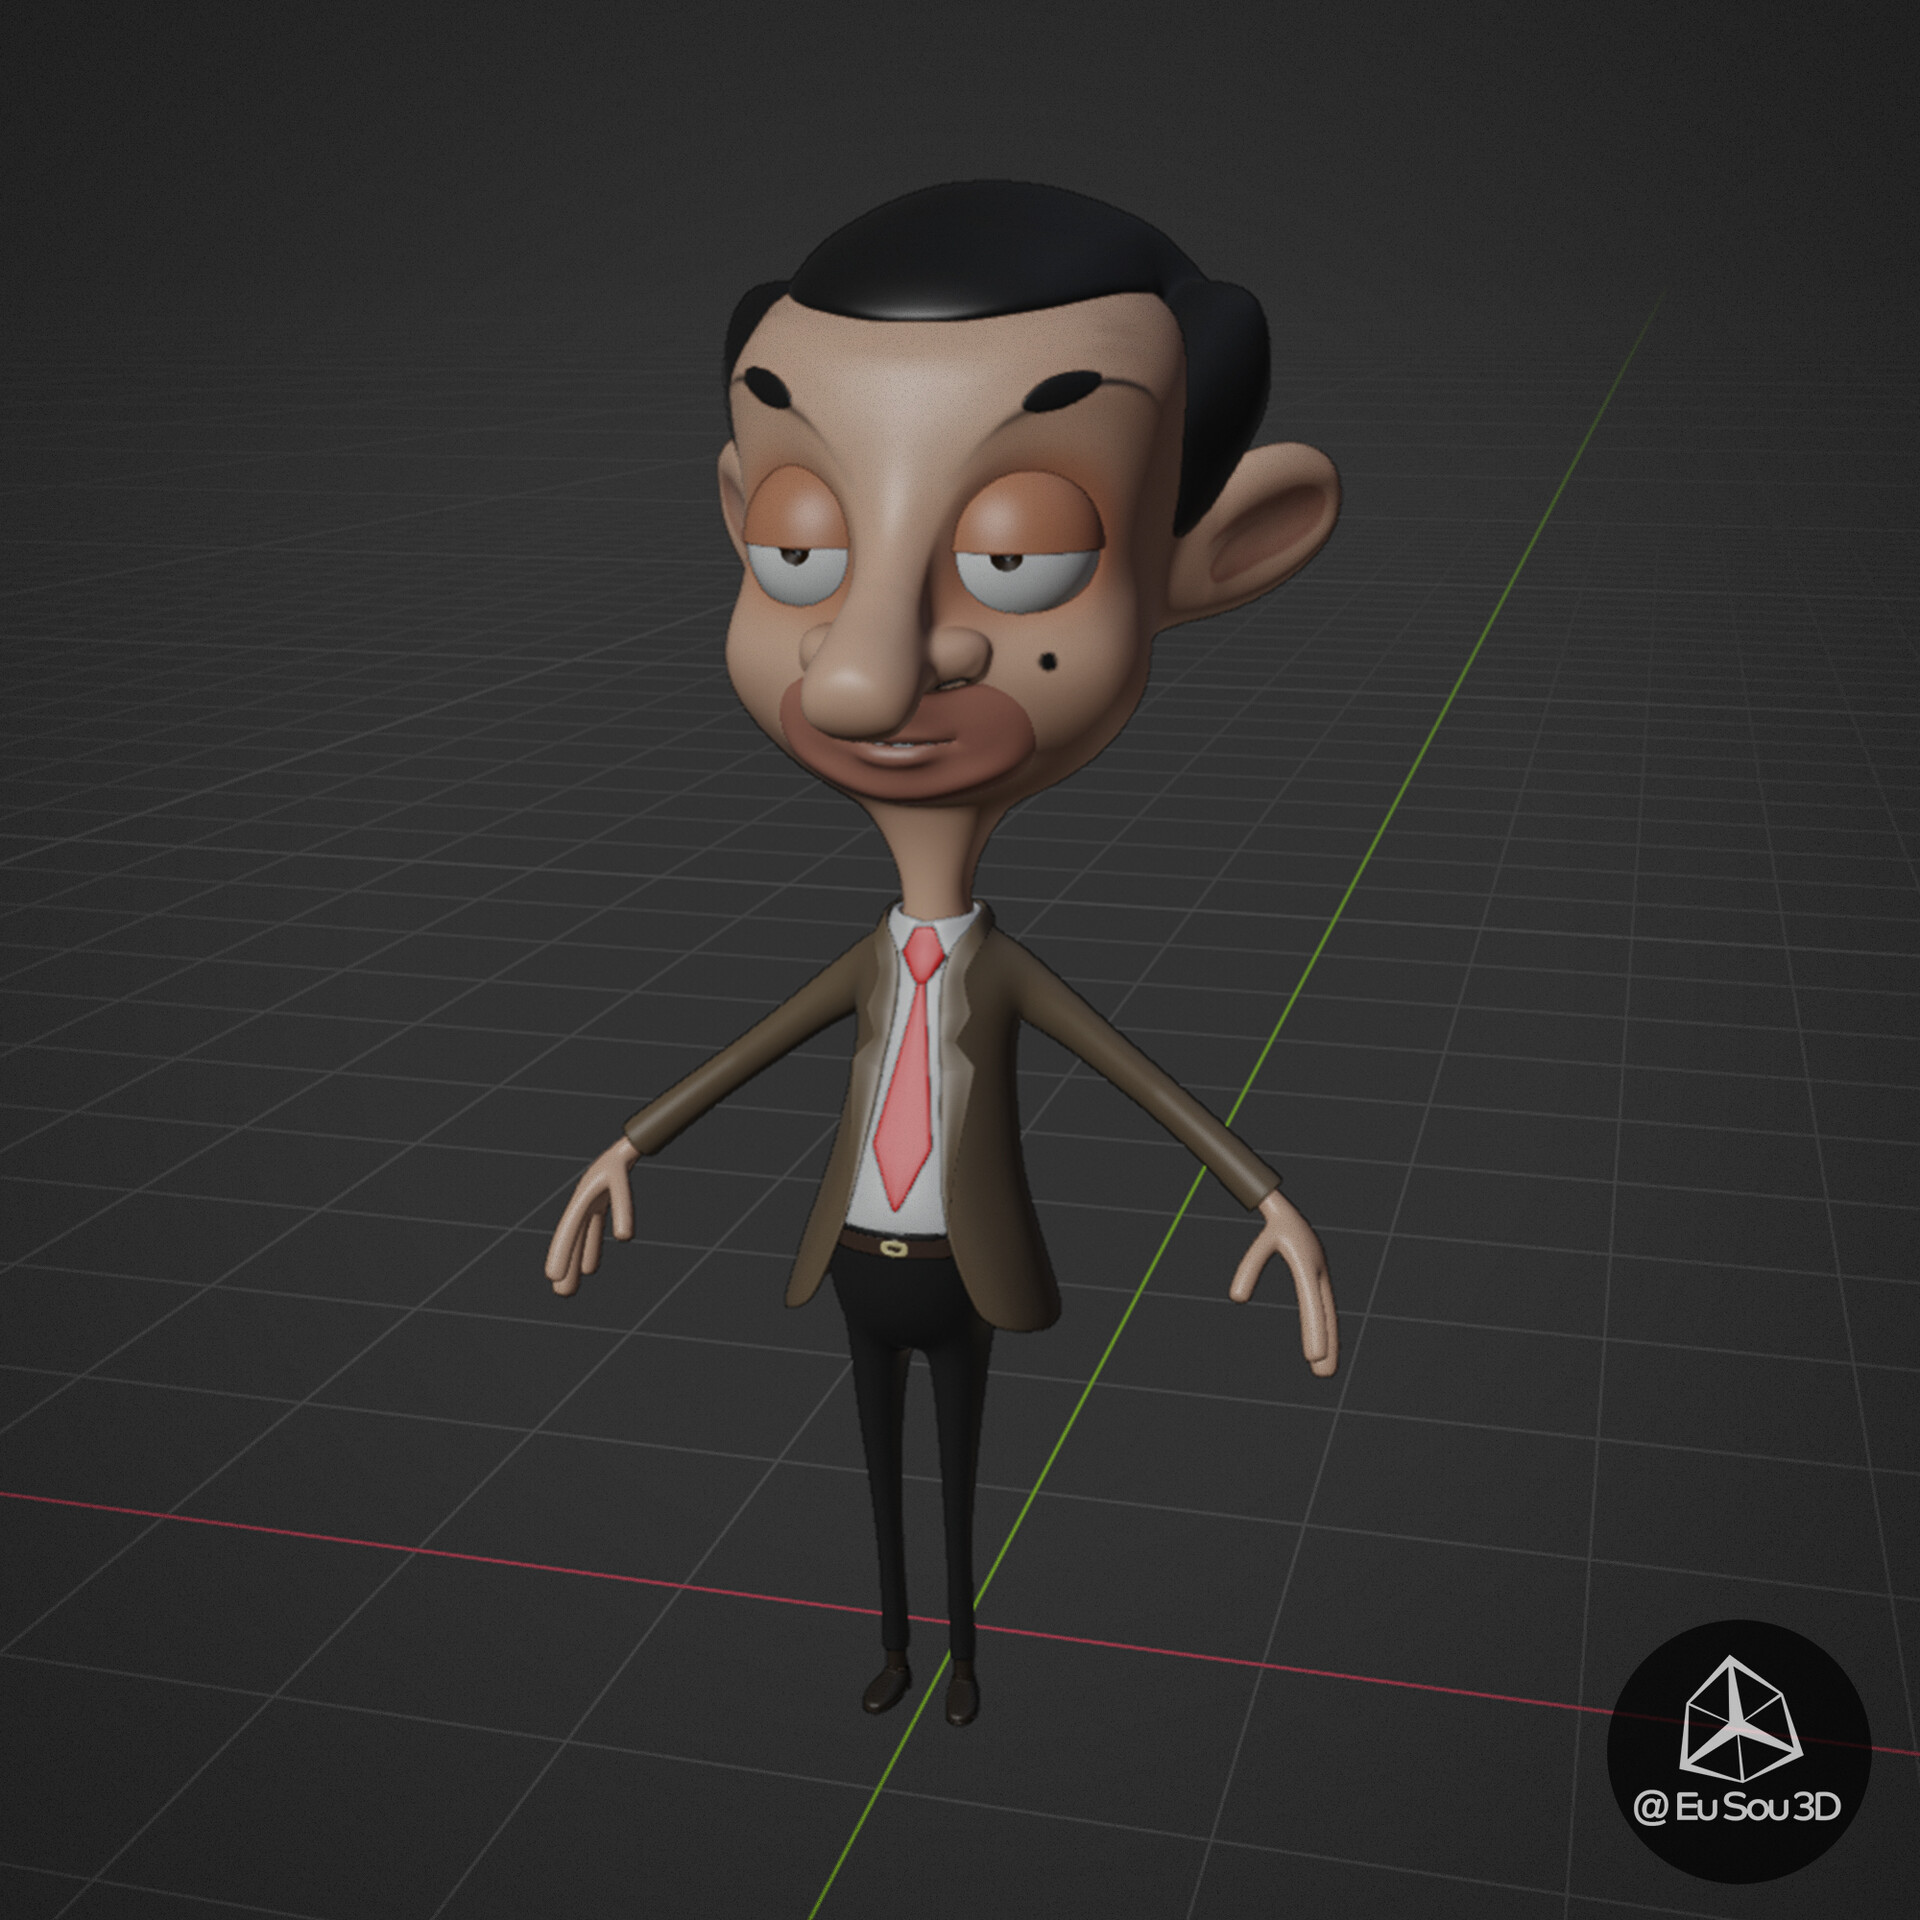 ArtStation - Mr Bean from 2d cartoon - Fan Art